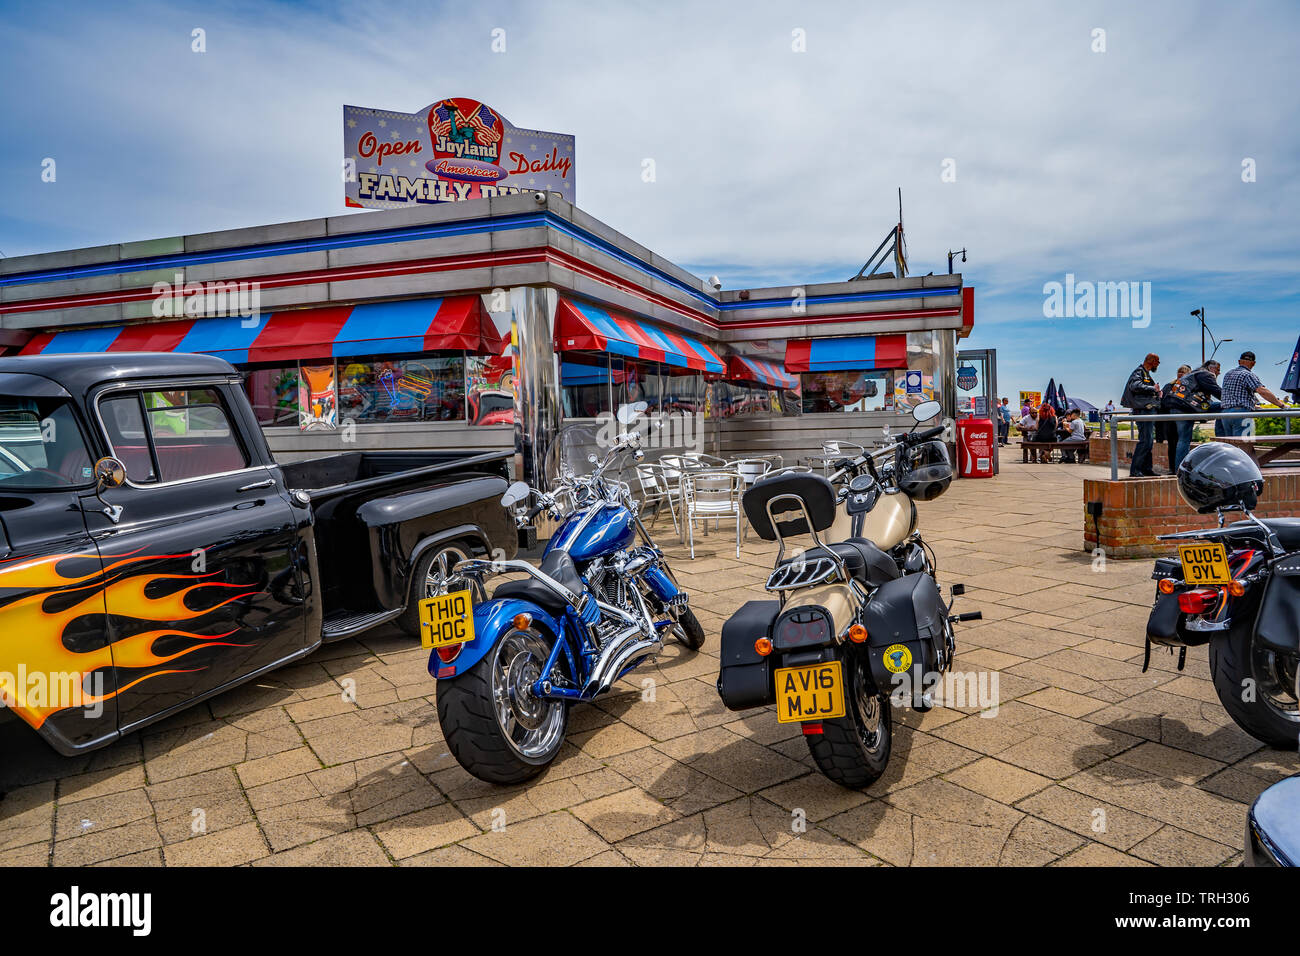 Pick up truck américain classique et d'une Harley Davidson motos garées devant le restaurant de style américain sur le front de mer de Great Yarmouth Banque D'Images